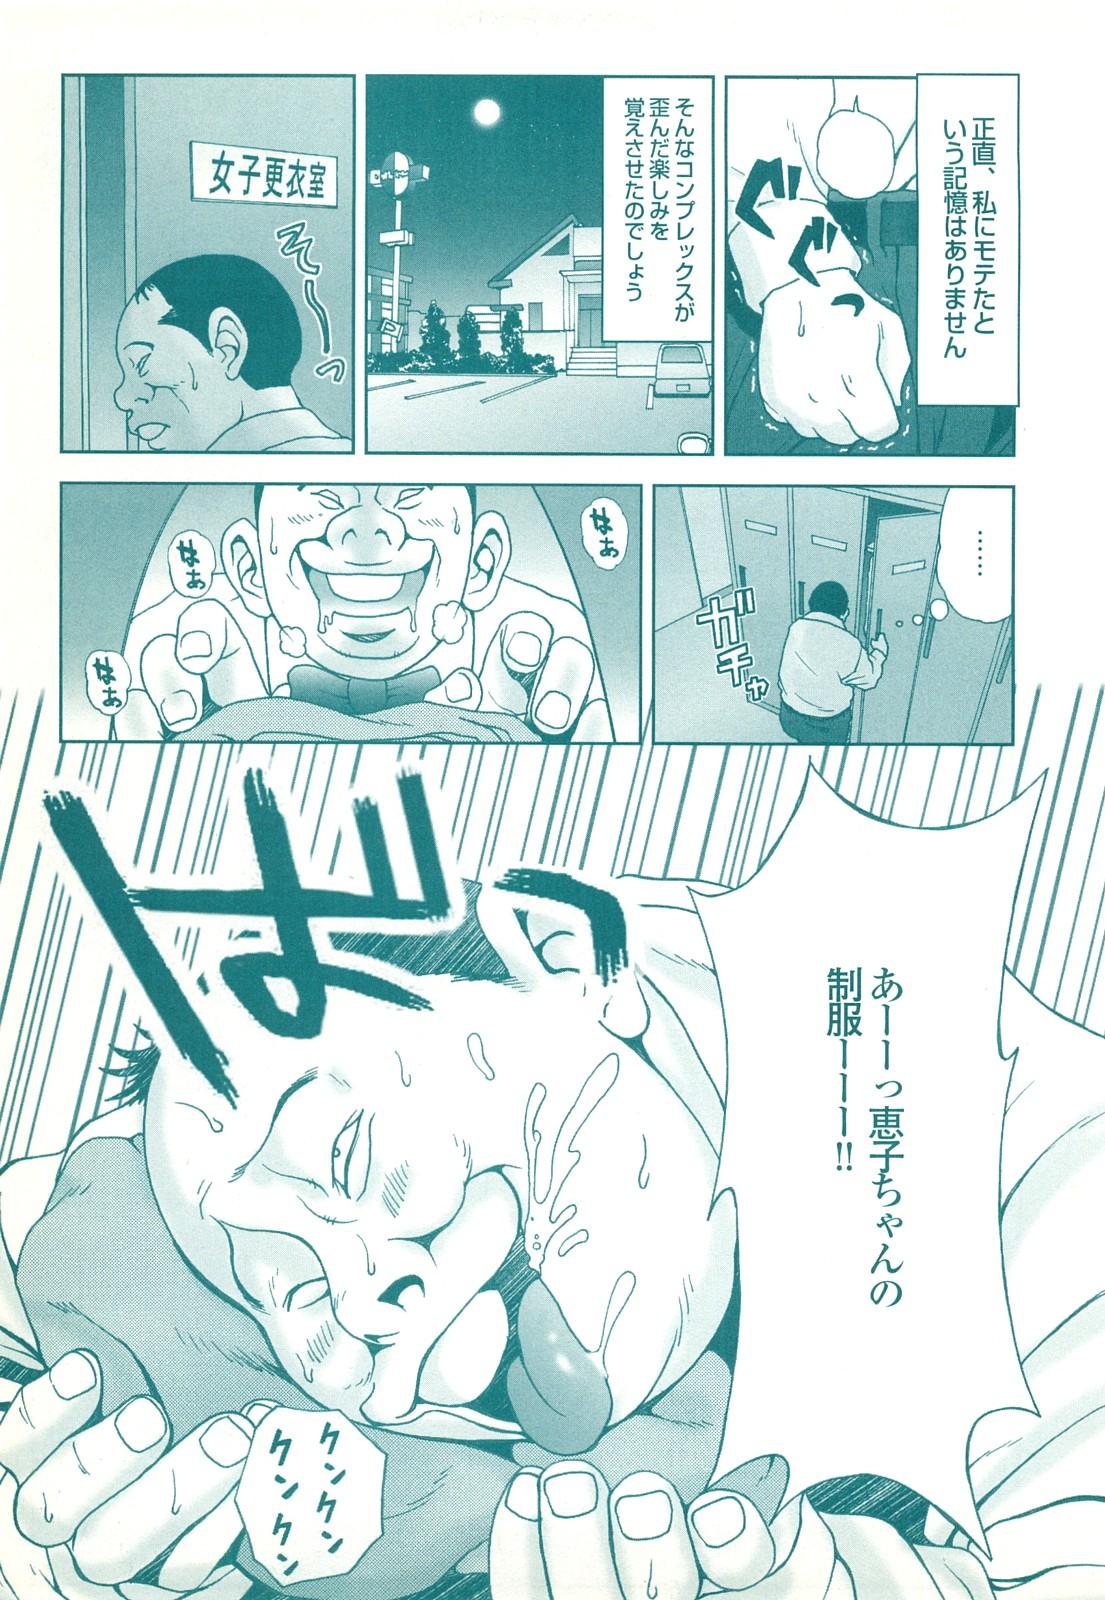 コミック裏モノJAPAN Vol.18 今井のりたつスペシャル号 178